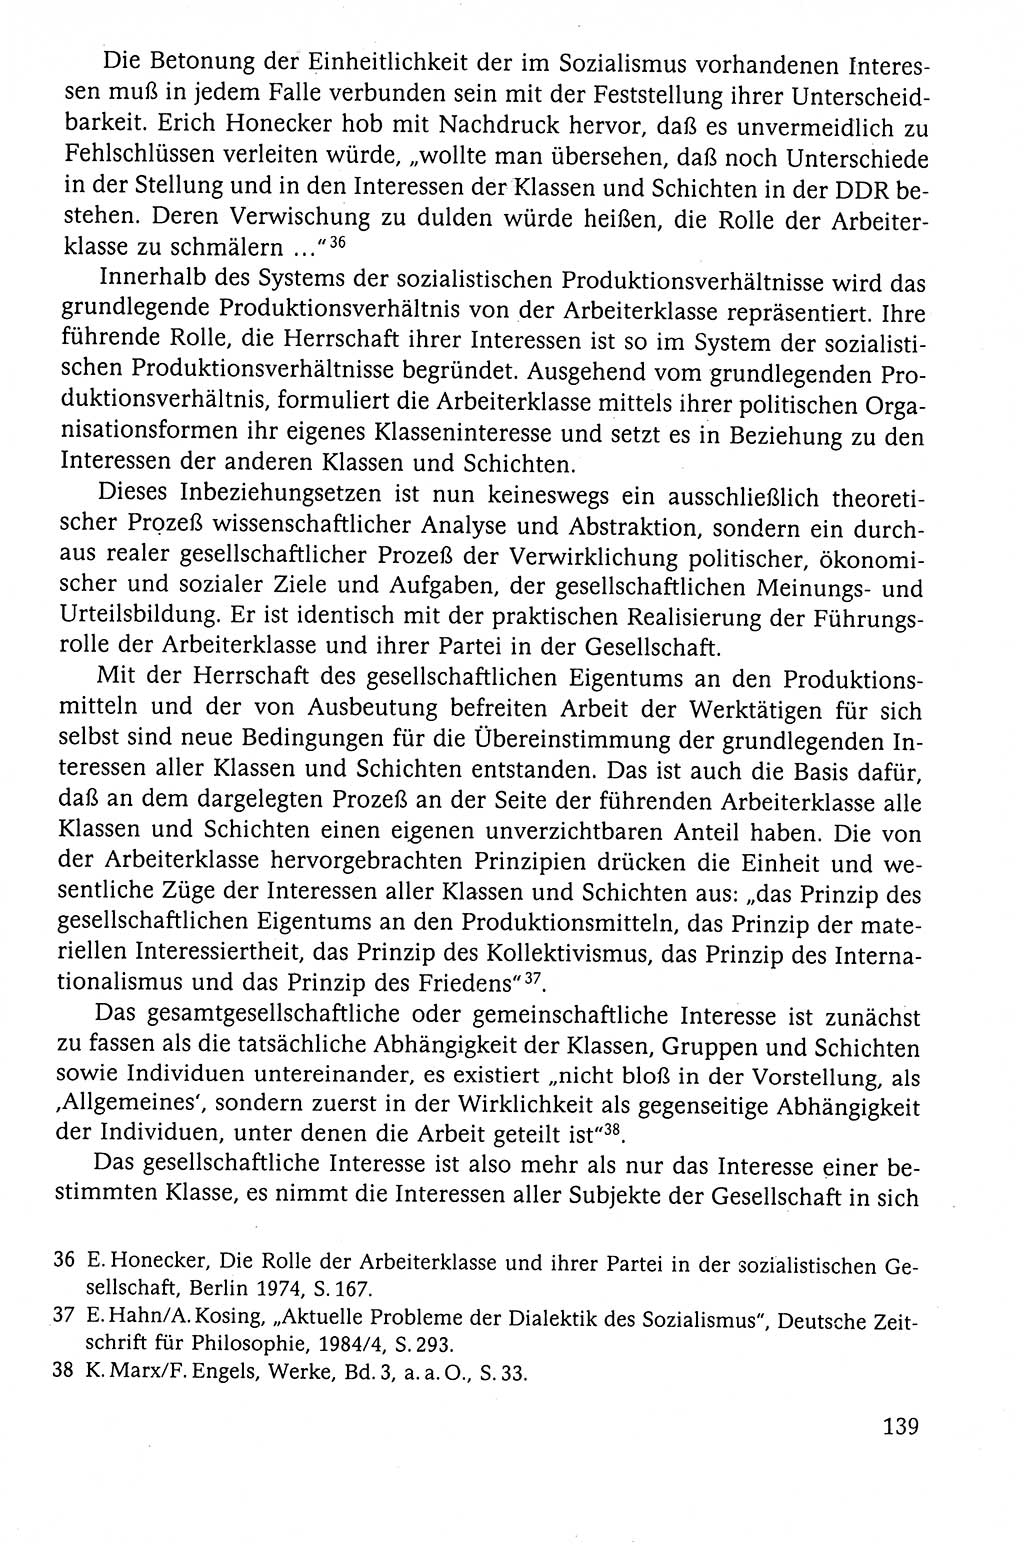 Der Staat im politischen System der DDR (Deutsche Demokratische Republik) 1986, Seite 139 (St. pol. Sys. DDR 1986, S. 139)